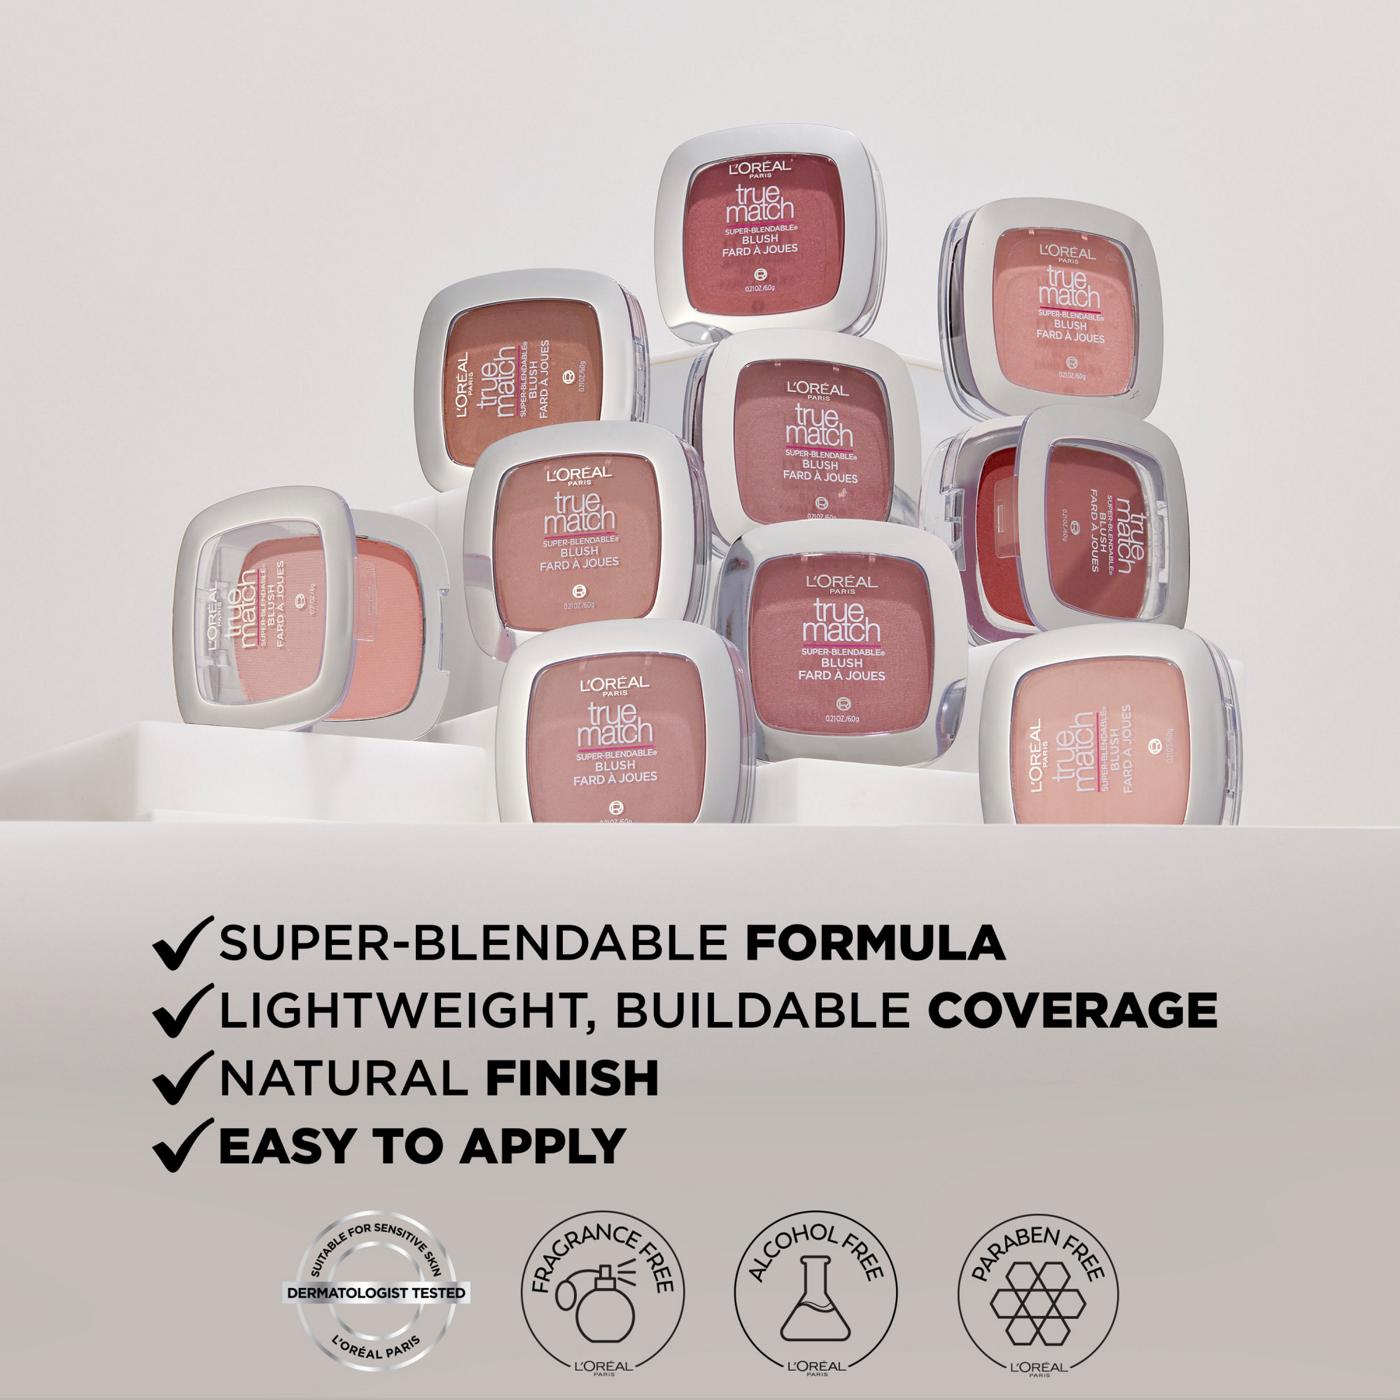 L'Oréal Paris True Match Super-Blendable Blush, Soft Powder Texture Apricot Kiss; image 2 of 5